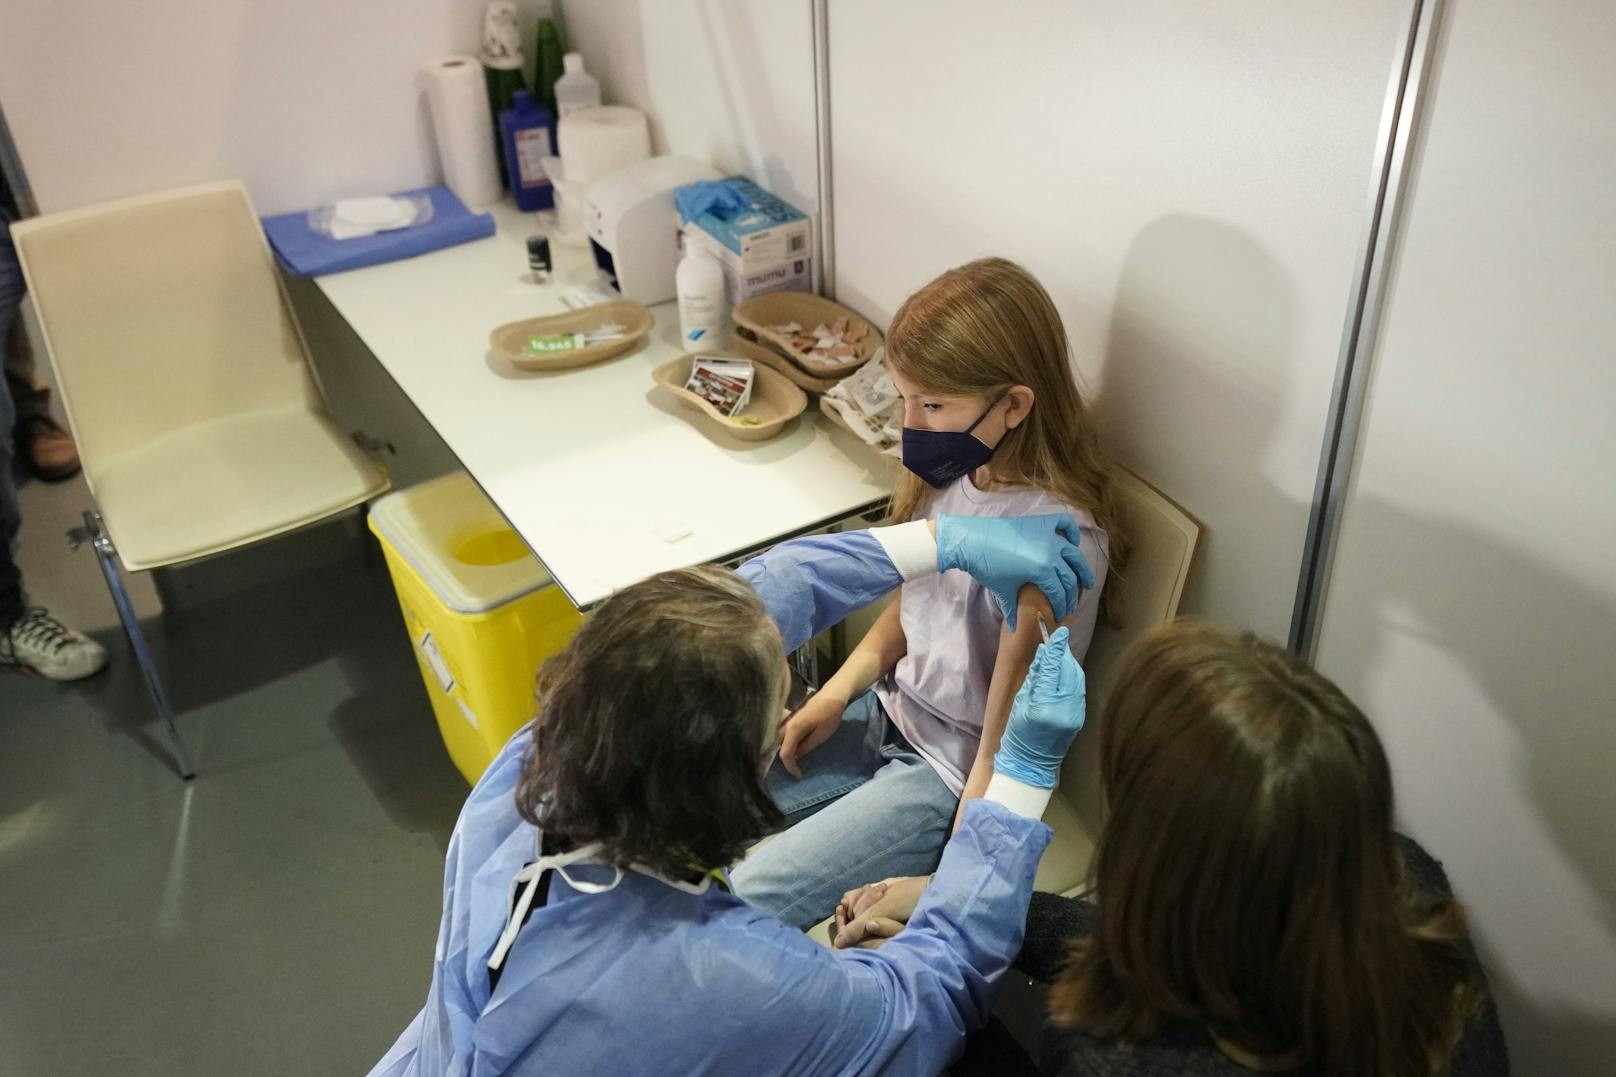 Als erste wagte sich Rosa (9) in die Impfkoje. Sie nahm es trotz des großen Medieninteresses cool, "war nicht schlimm", erzählte sie später.